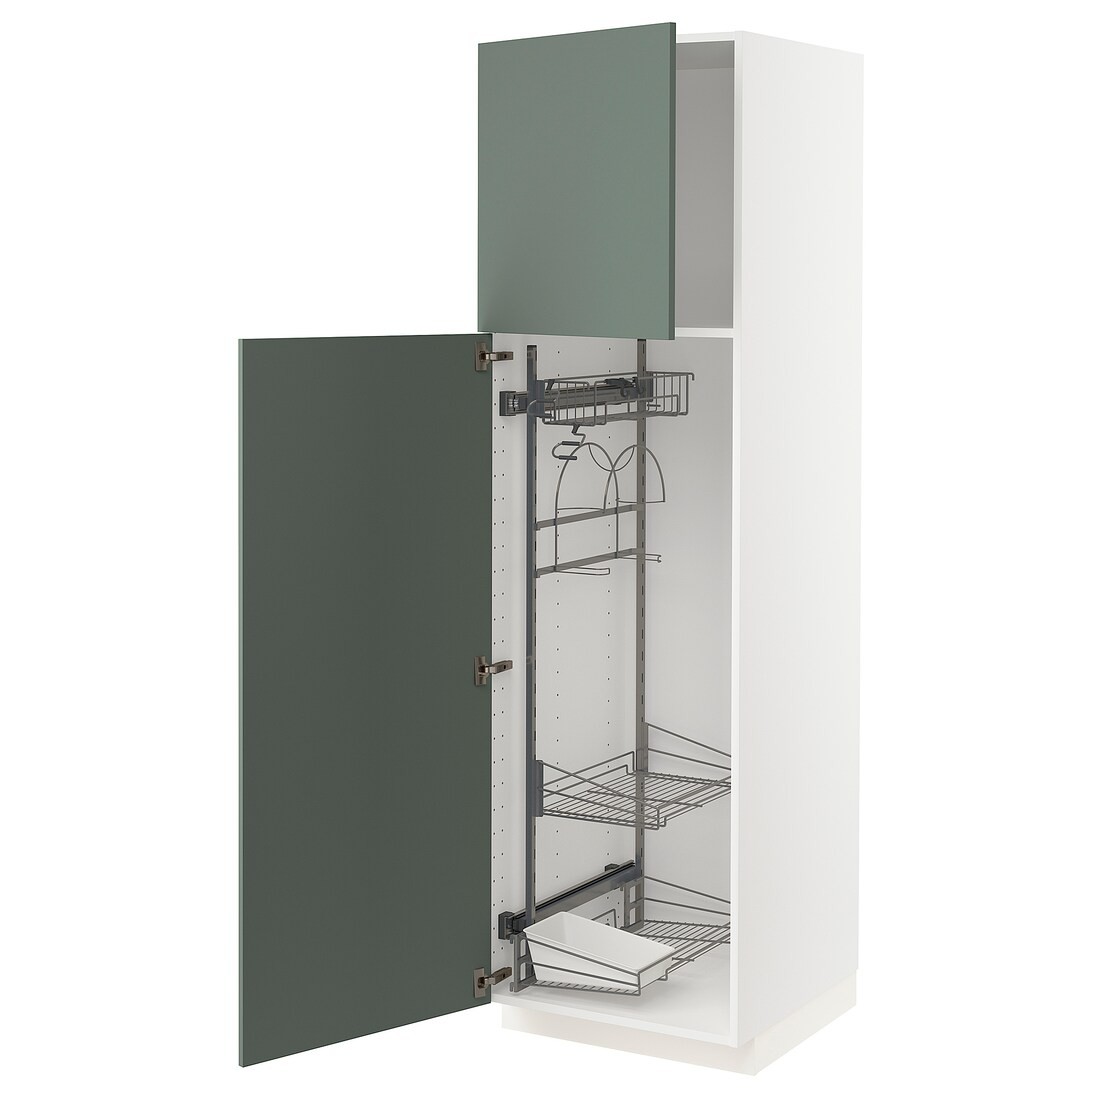 METOD МЕТОД Высокий шкаф с отделением для аксессуаров для уборки, белый / Bodarp серо-зеленый, 60x60x200 см